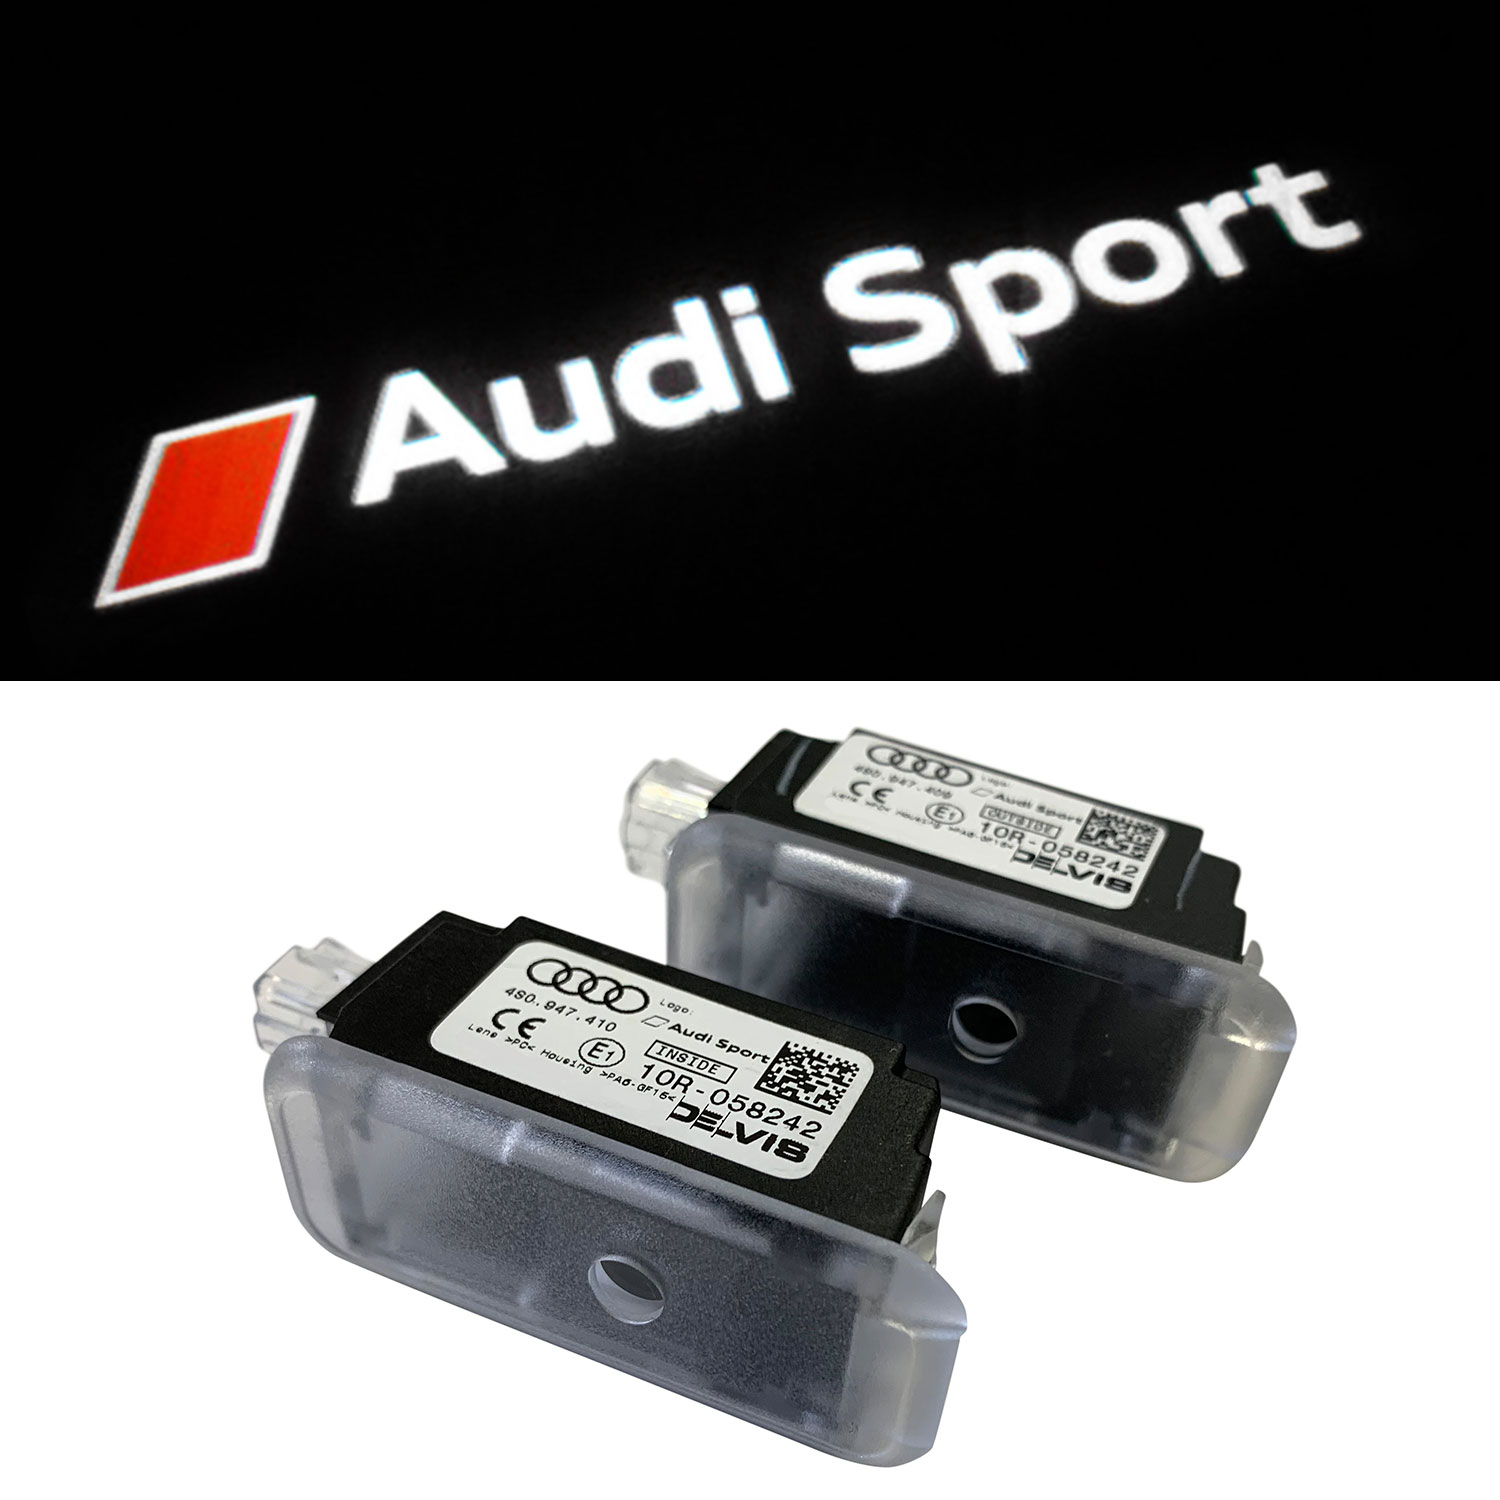 Audi Audi LED Einstiegsbeleuchtung Audi Ringe mit